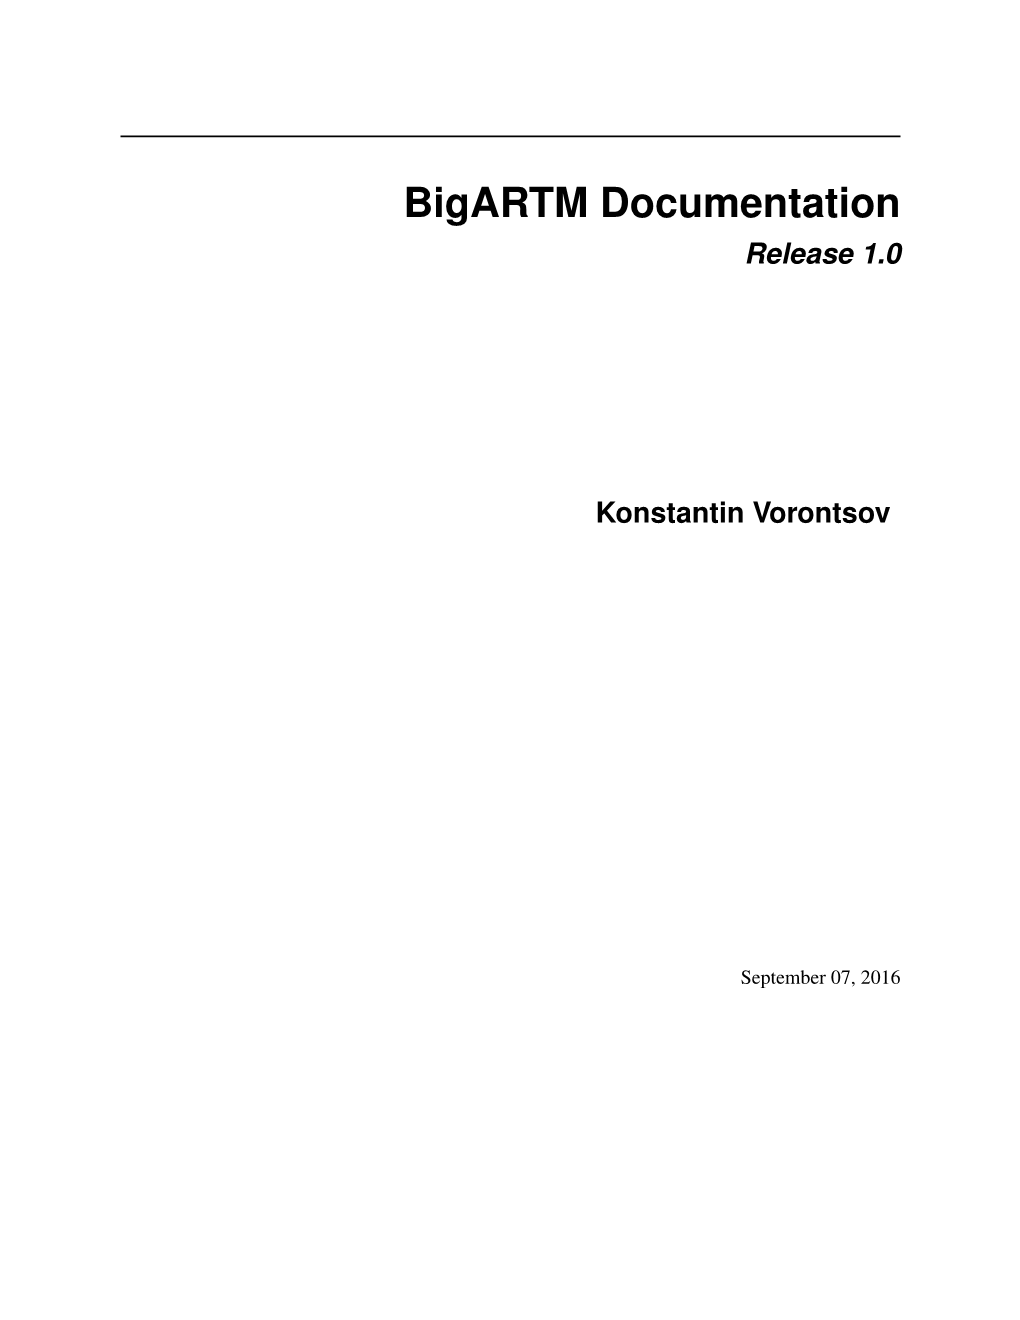 Bigartm Documentation Release 1.0 Konstantin Vorontsov